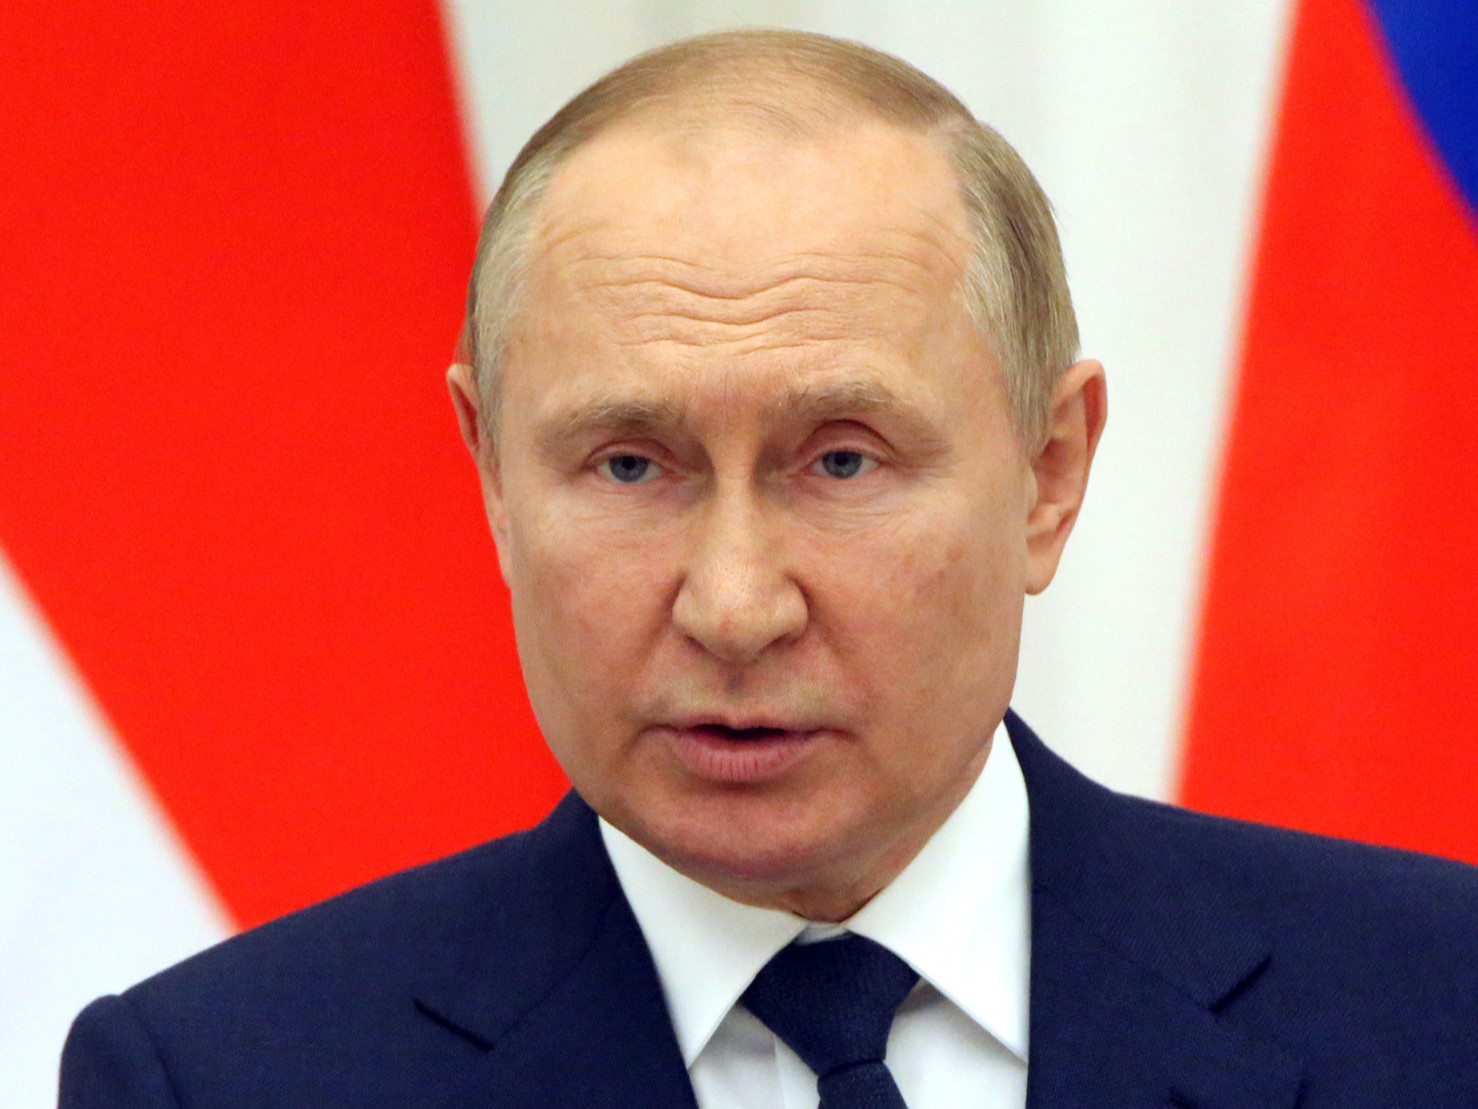 "Сүүлчийн Украин үлдэх хүртэл дайн үргэлжлэх болно" гэж В.Путин анхааруулжээ